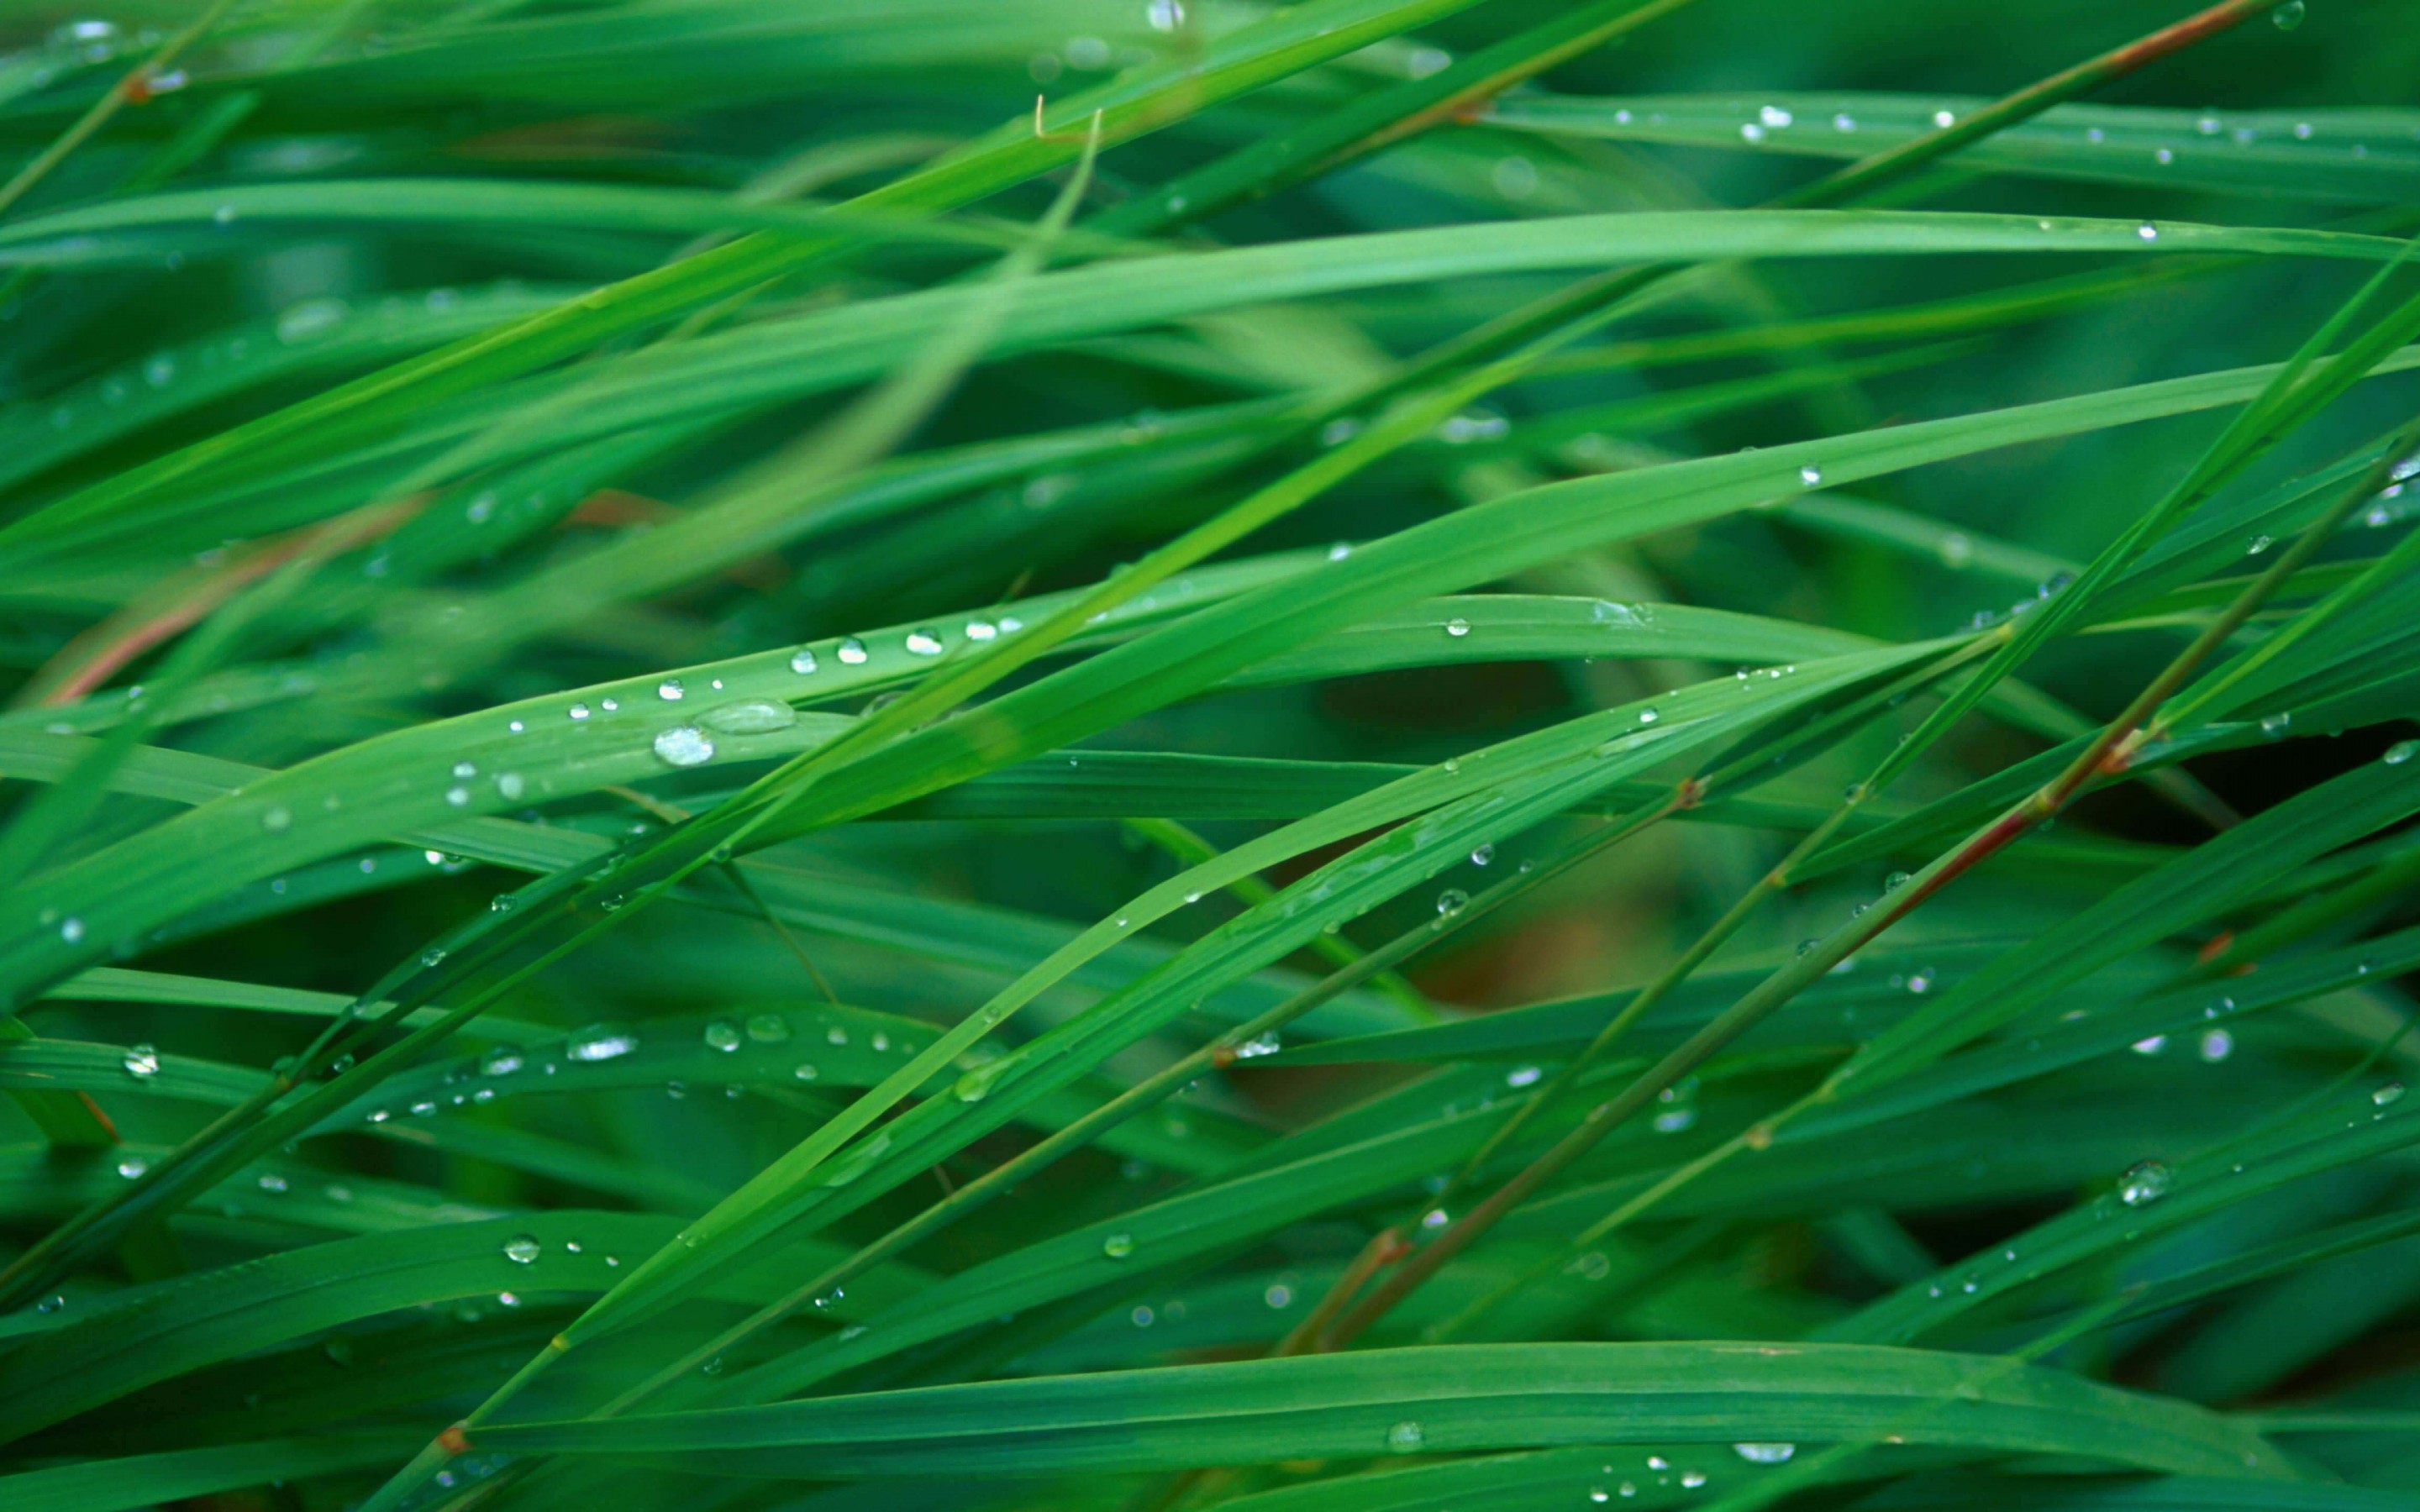 Green Blades Of Grass Wallpaper for Desktop 2880x1800